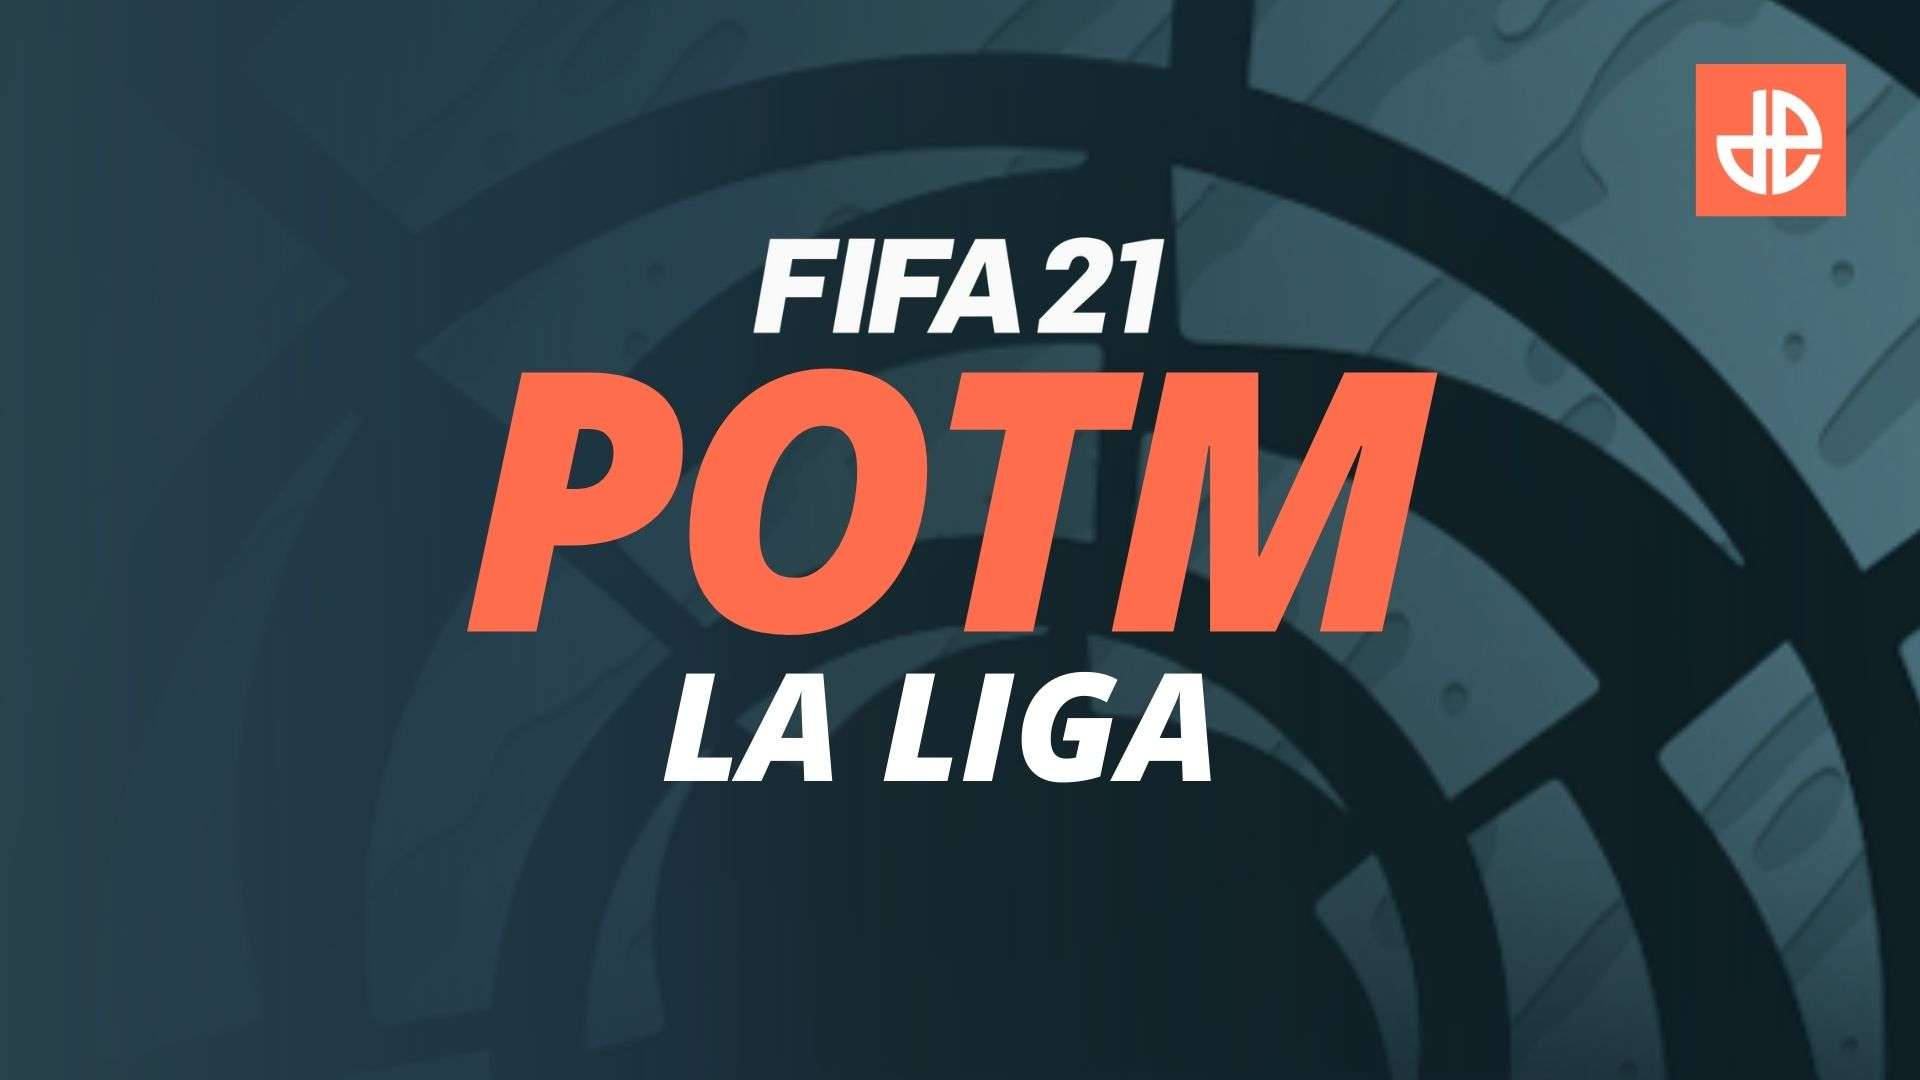 FIFA 21 pOTM la liga